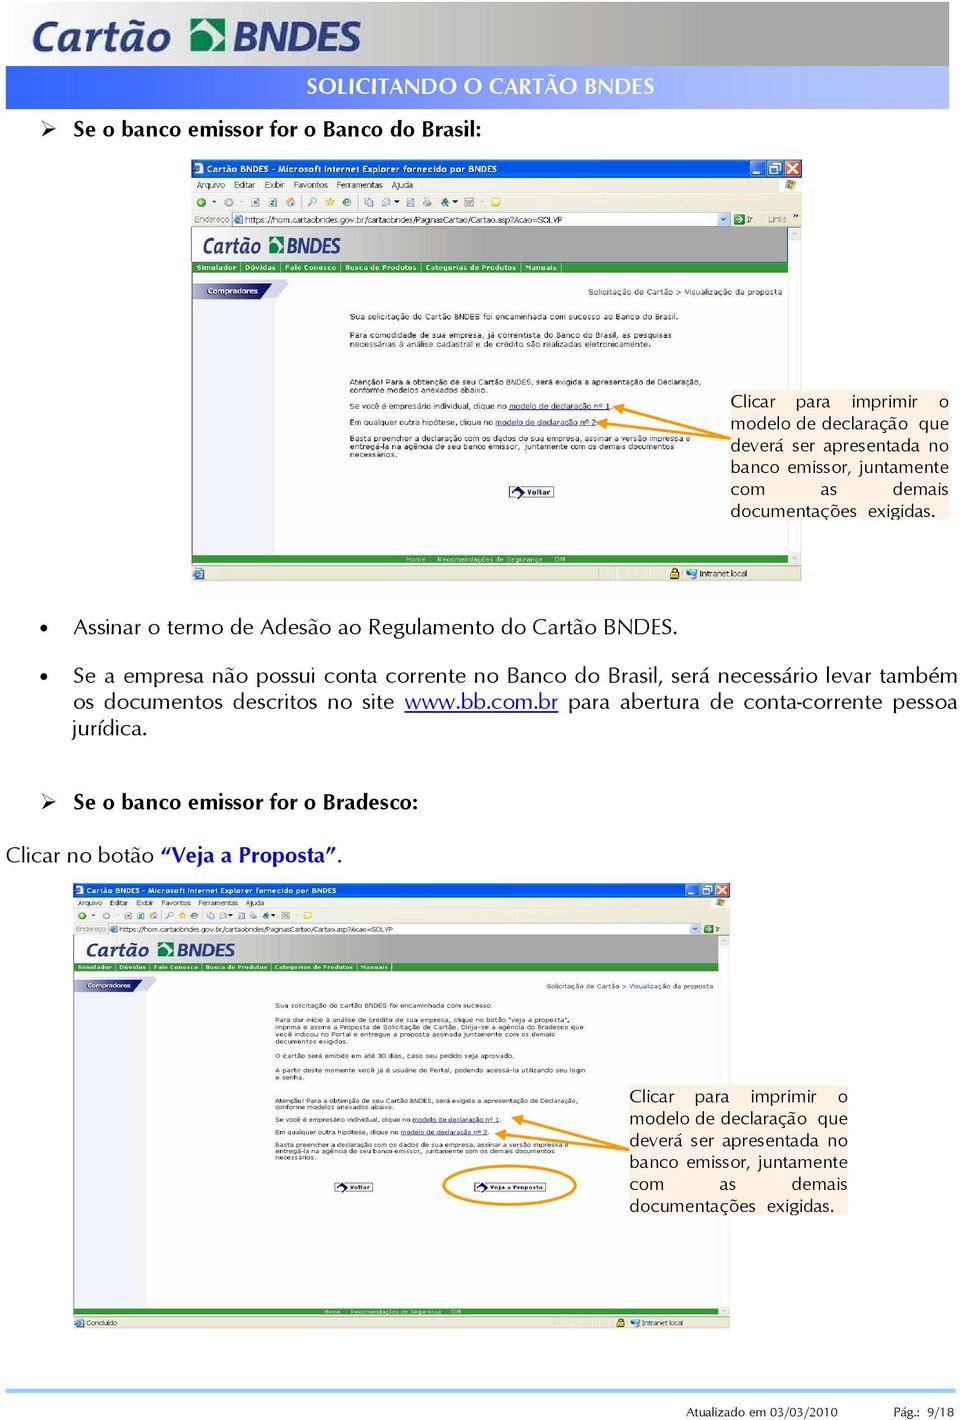 Se a empresa não possui conta corrente no Banco do Brasil, será necessário levar também os documentos descritos no site www.bb.com.